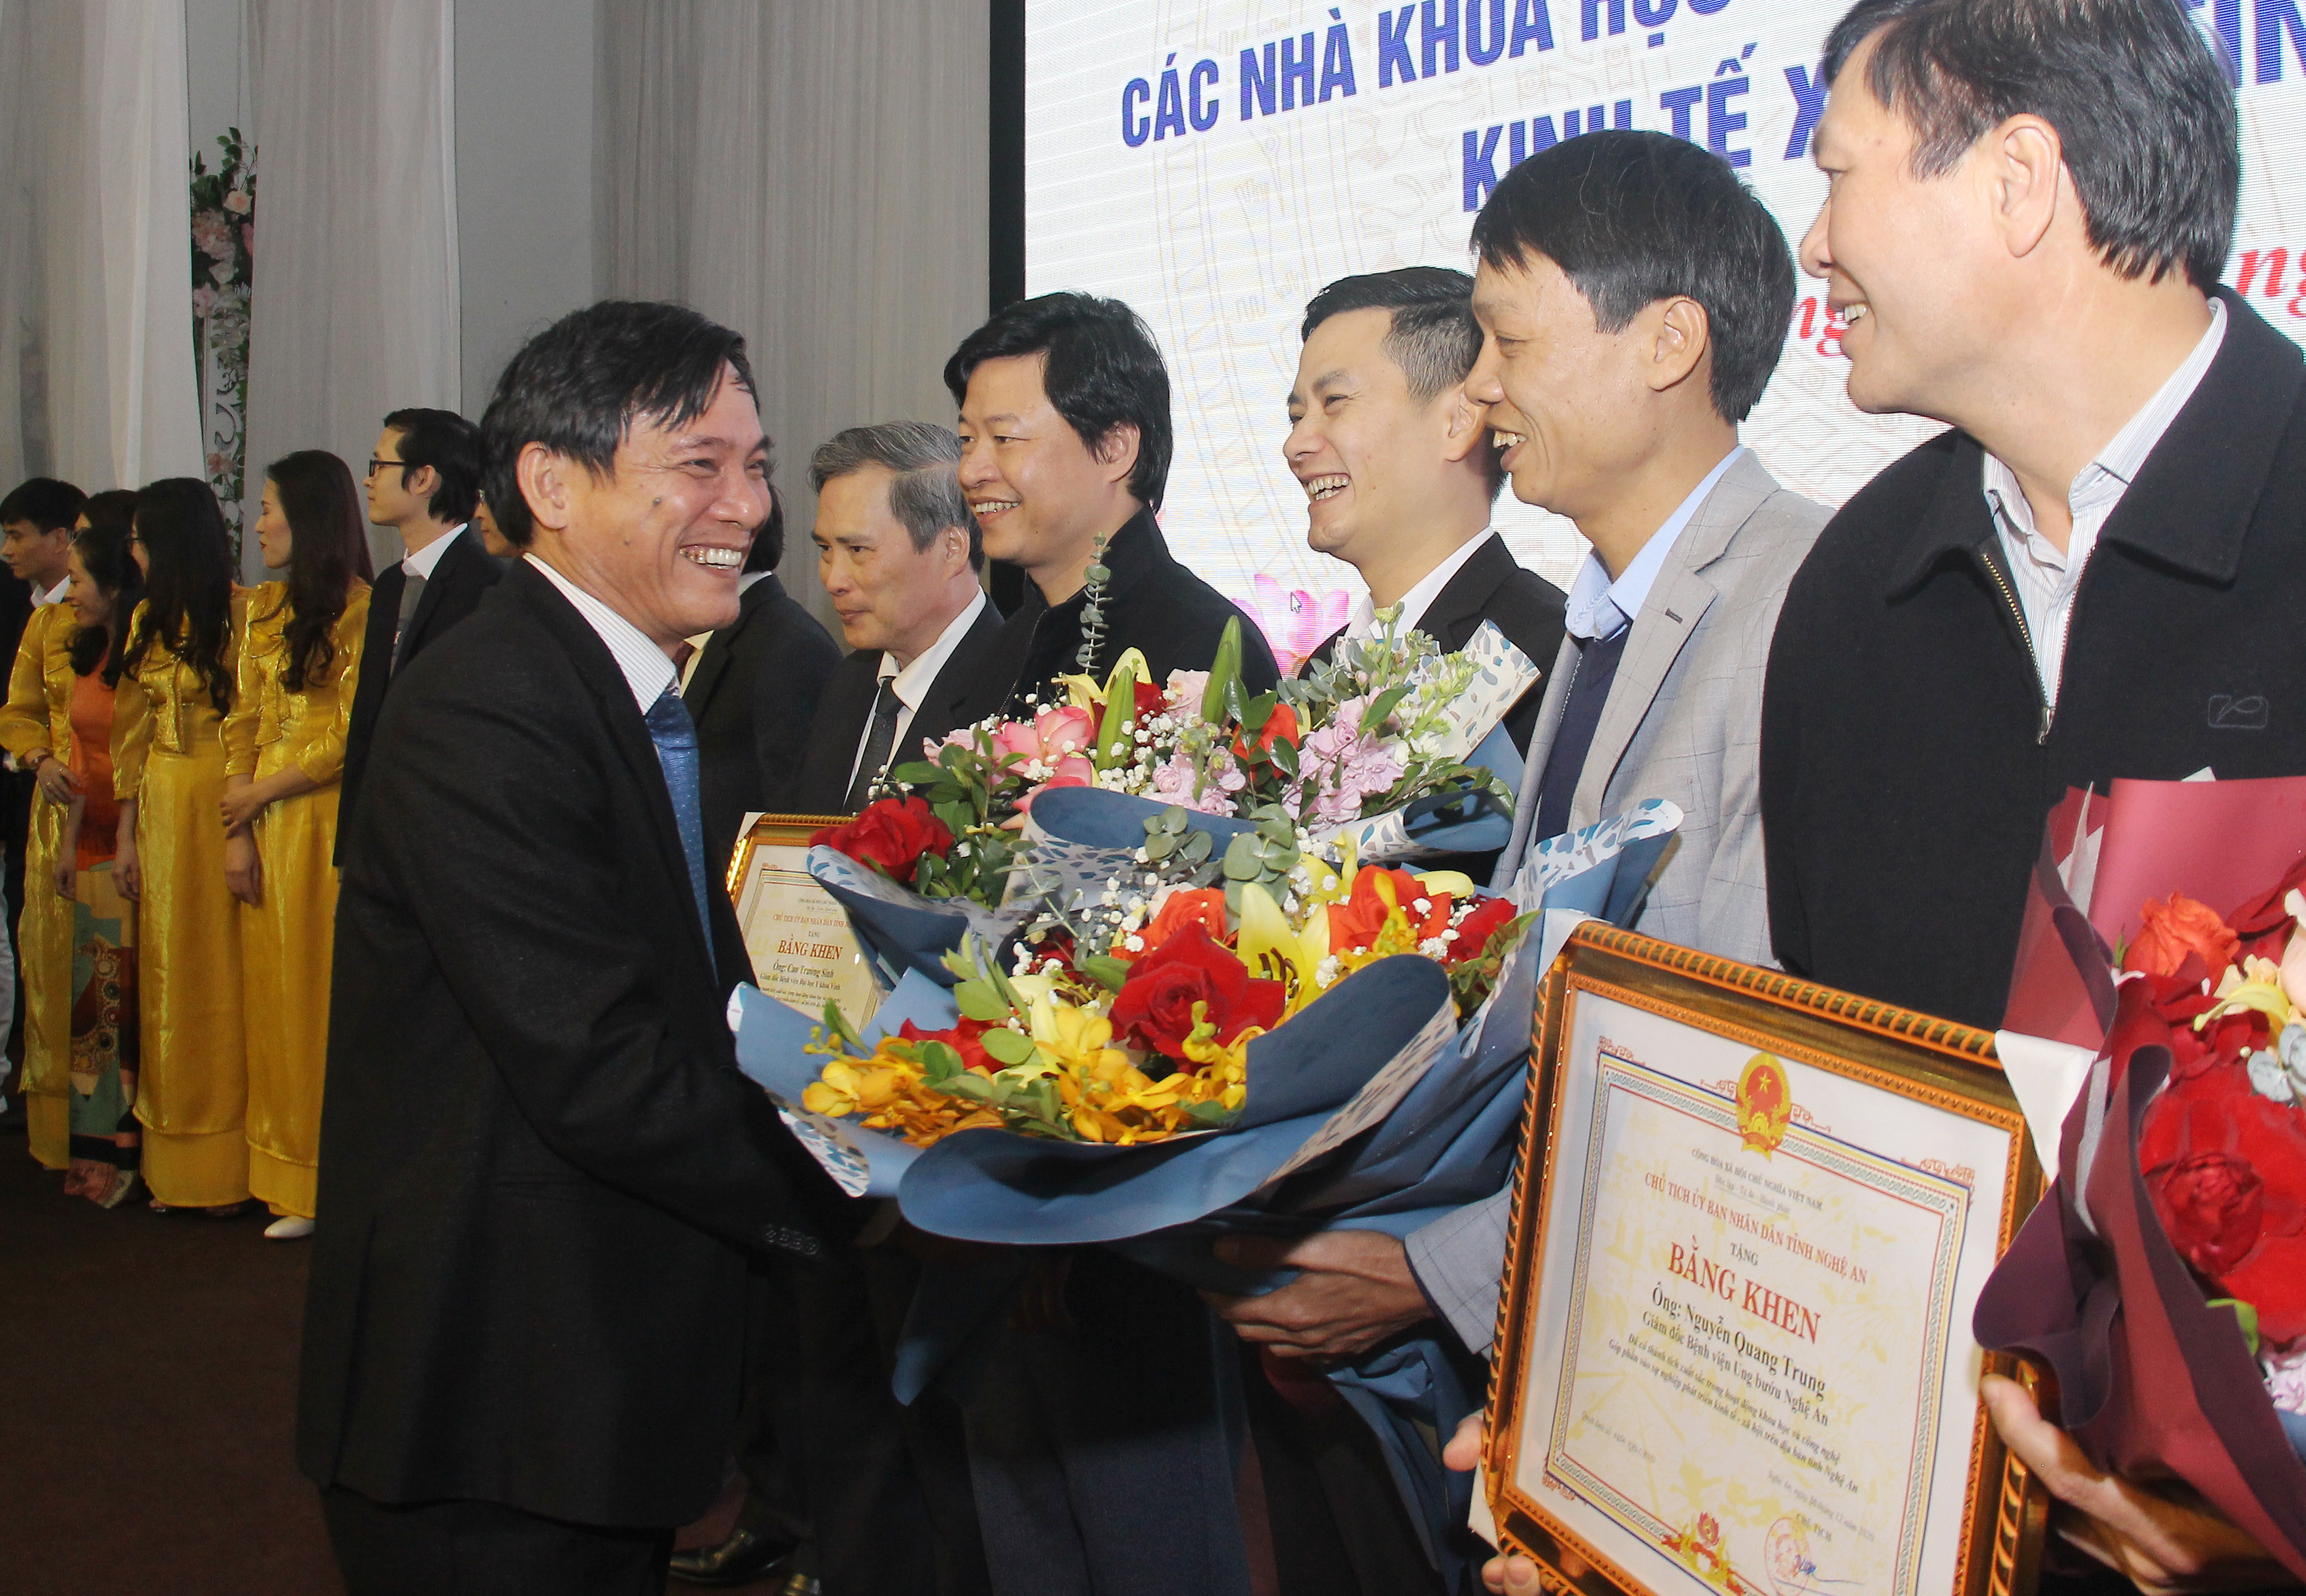 Đồng chí Trần Quốc Thành - Giám đốc Sở Khoa học và Công nghệ tặng hoa cho các nhà khoa học được tôn vịnh. Ảnh: Mai Hoa